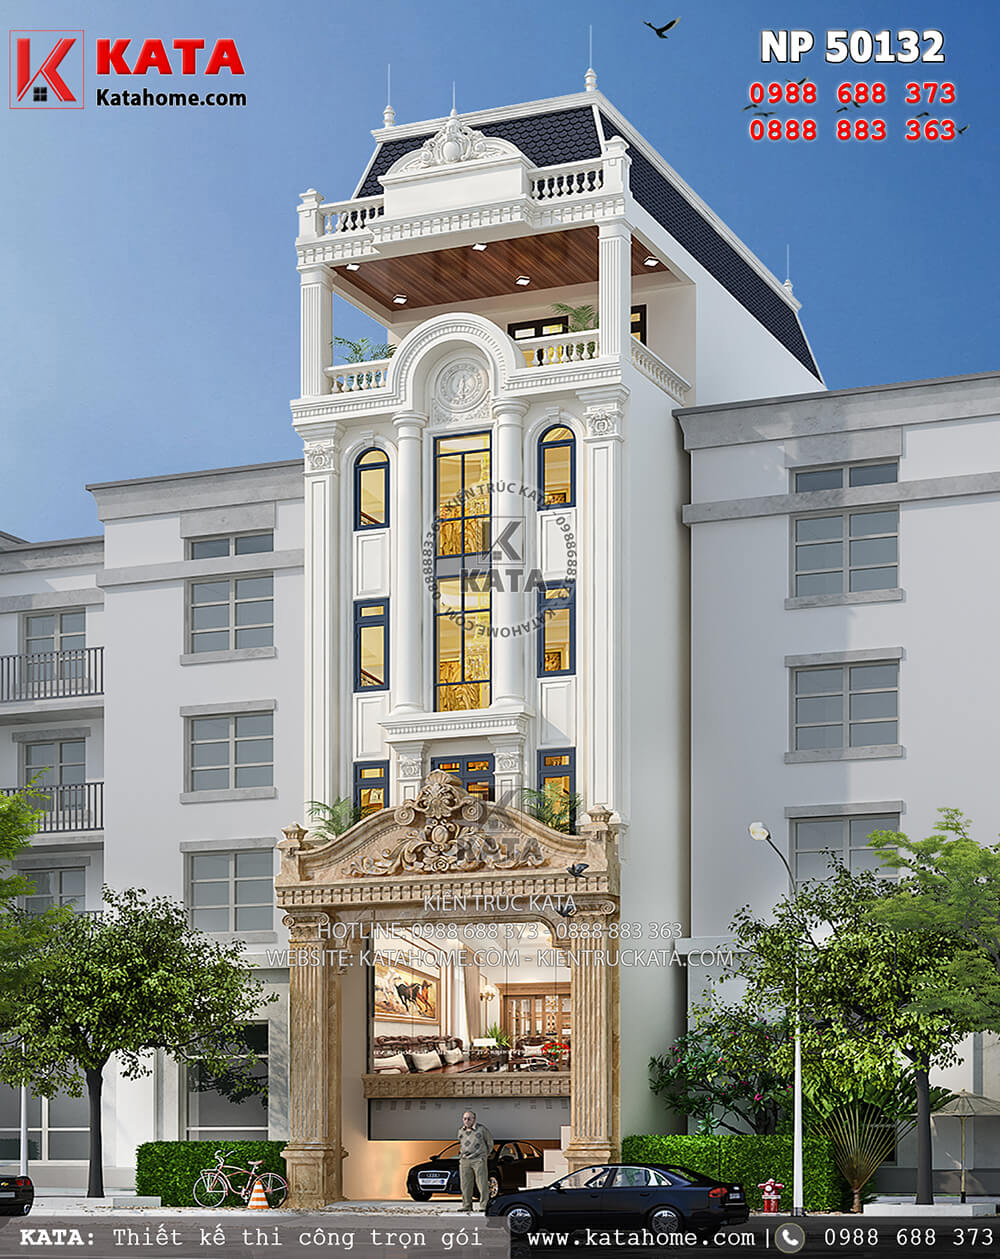 Thiết kế khách sạn 2 sao kiến trúc tân cổ điển tại Nha Trang - Mã số: NP 50132